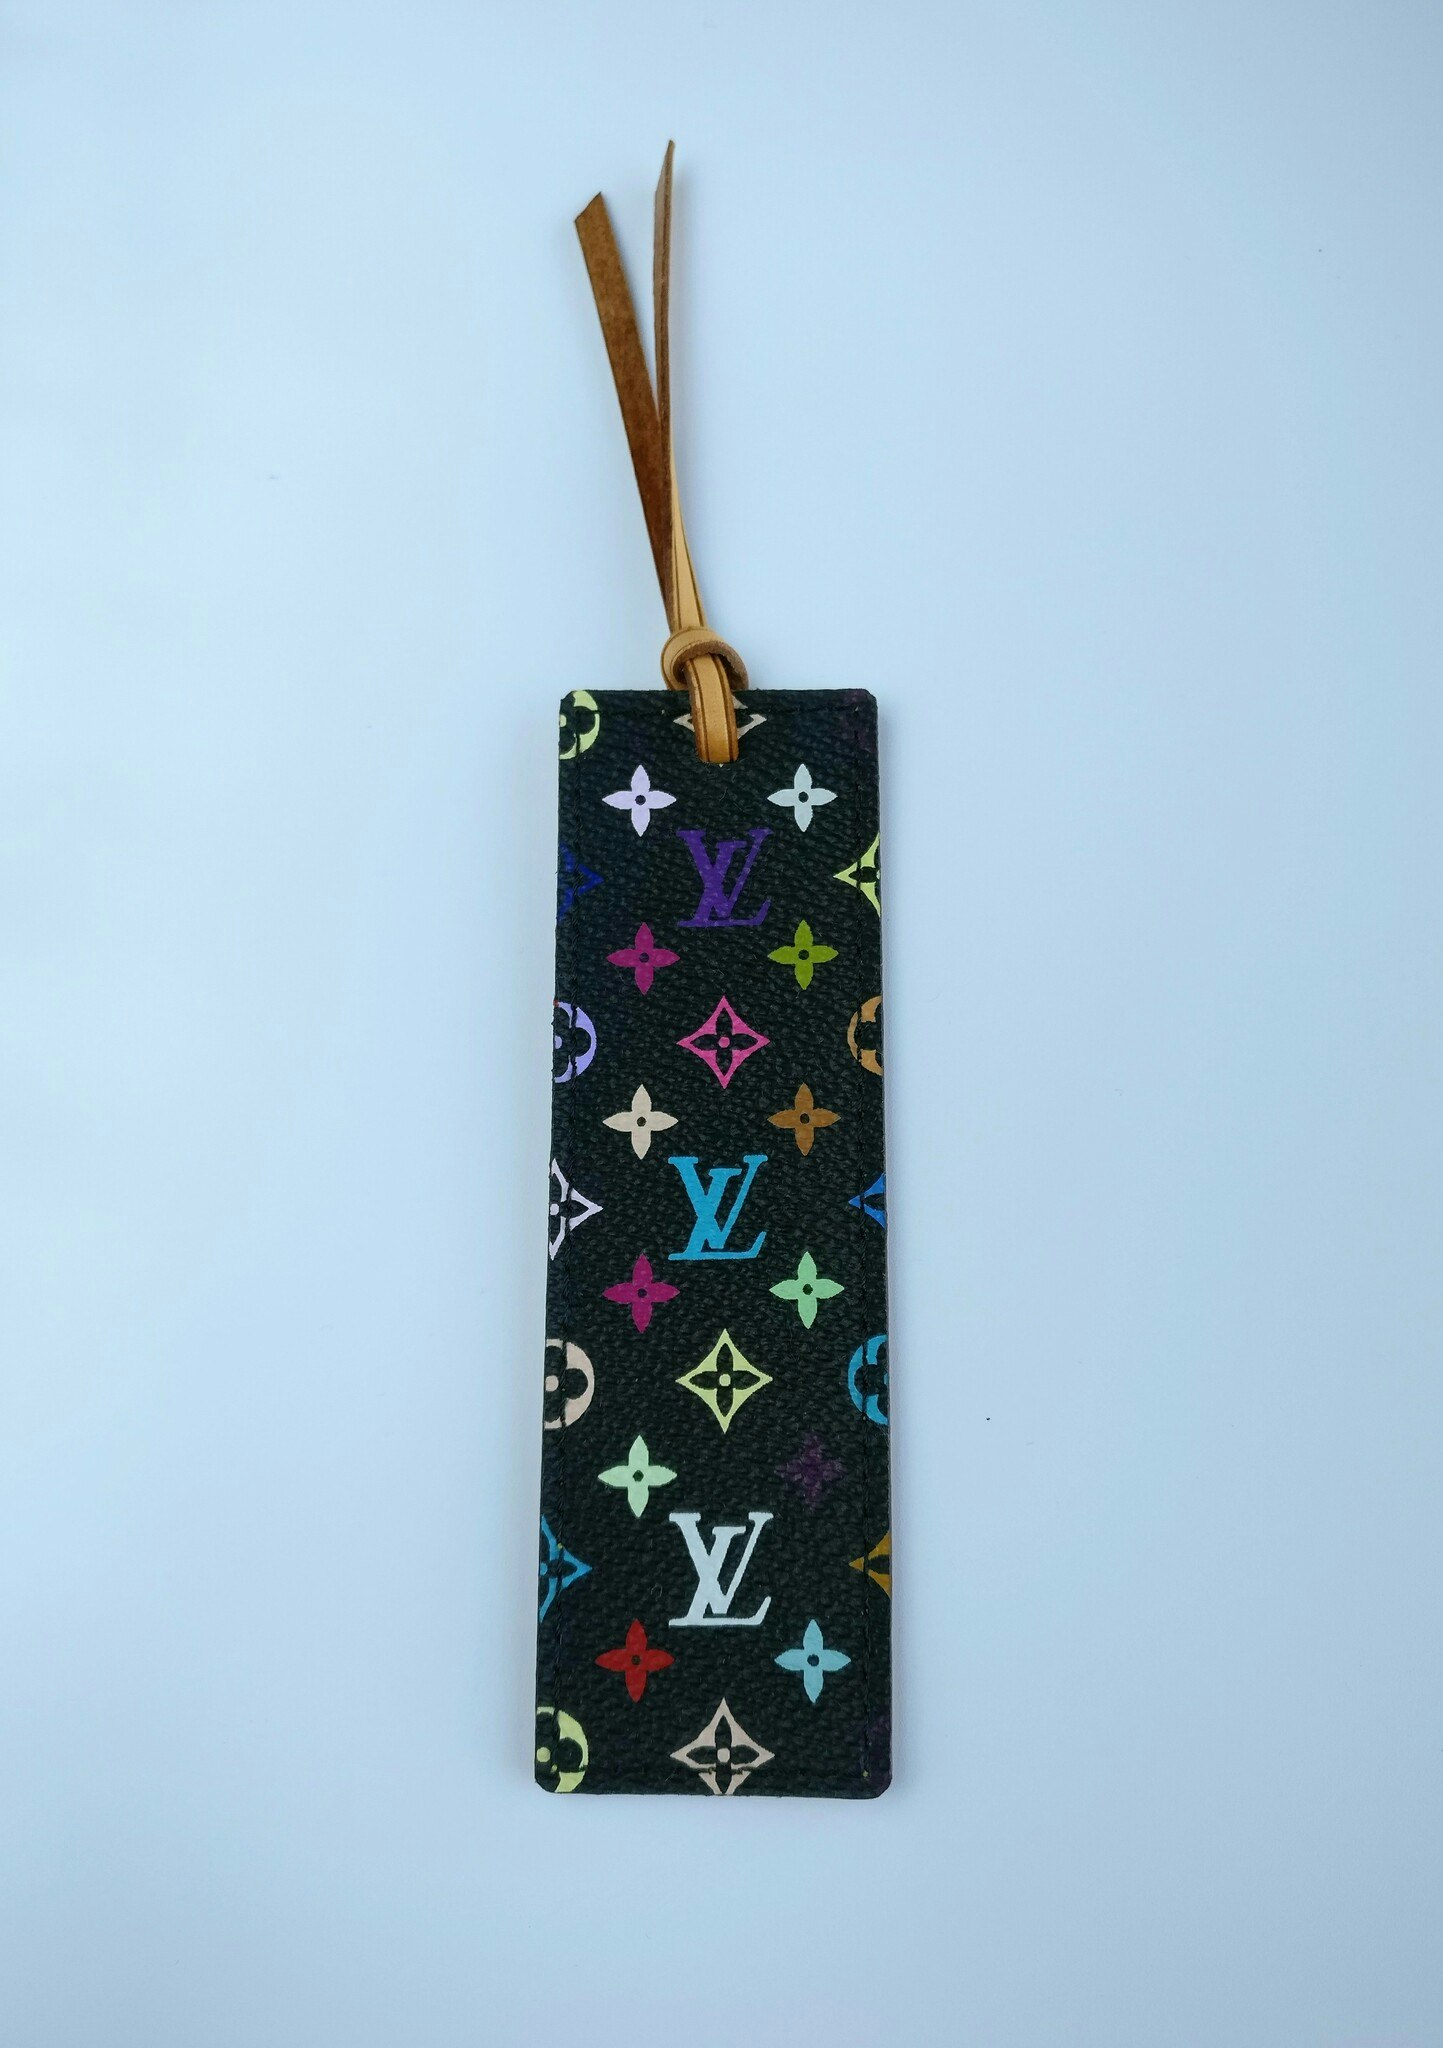 Louis Vuitton multicolore bookmark / bag charm